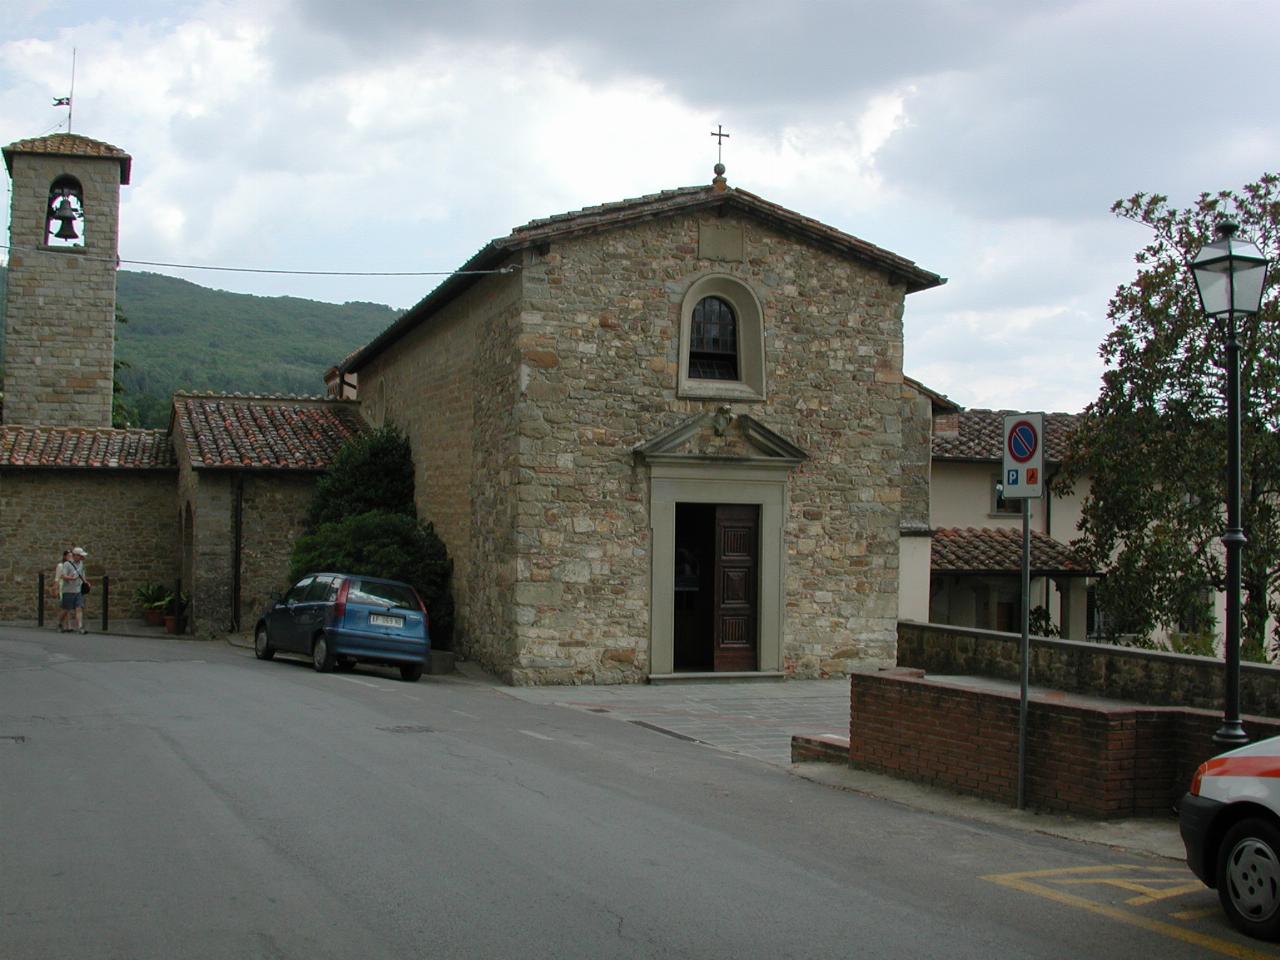 Church of St. Brigid in Santa Brigida